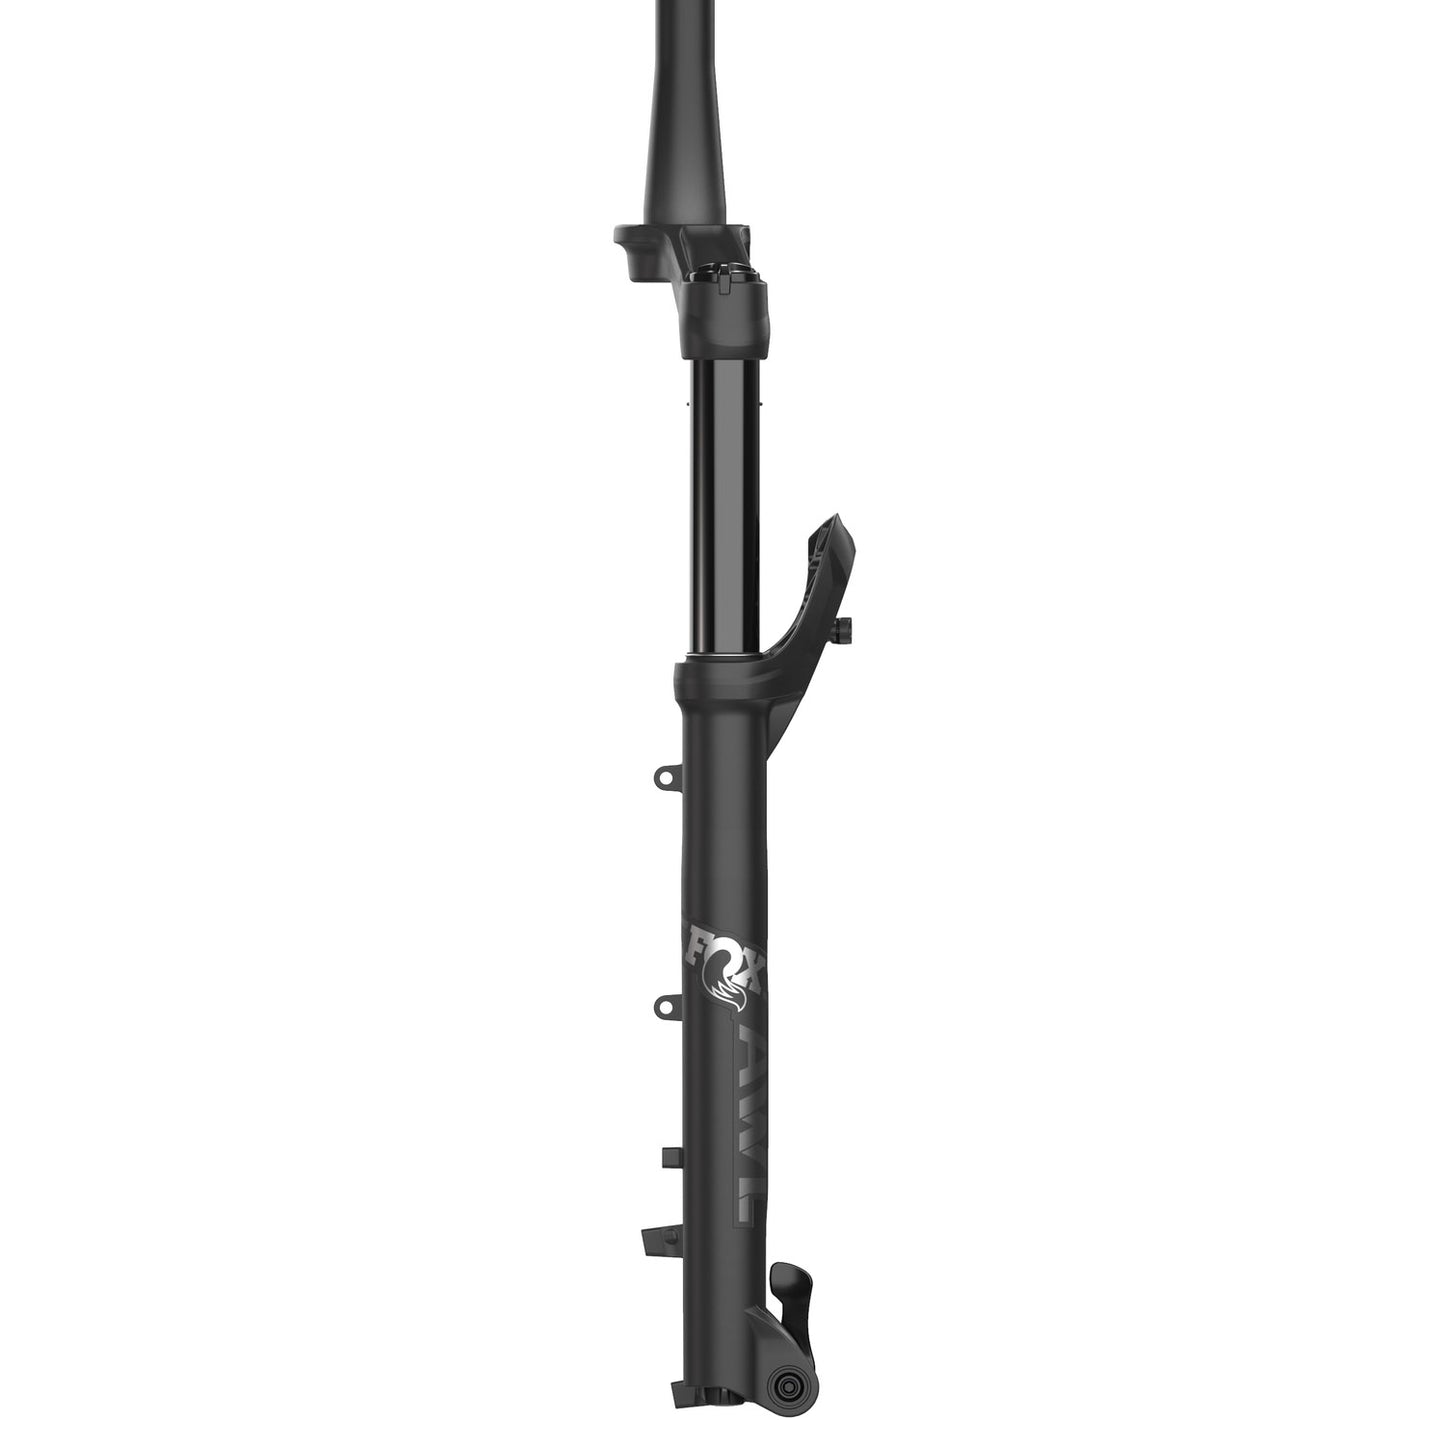 FOX 34 Float AWL RAIL Tapered Fork 2022/23 - 27.5" / 120mm / 15QR / 44mm